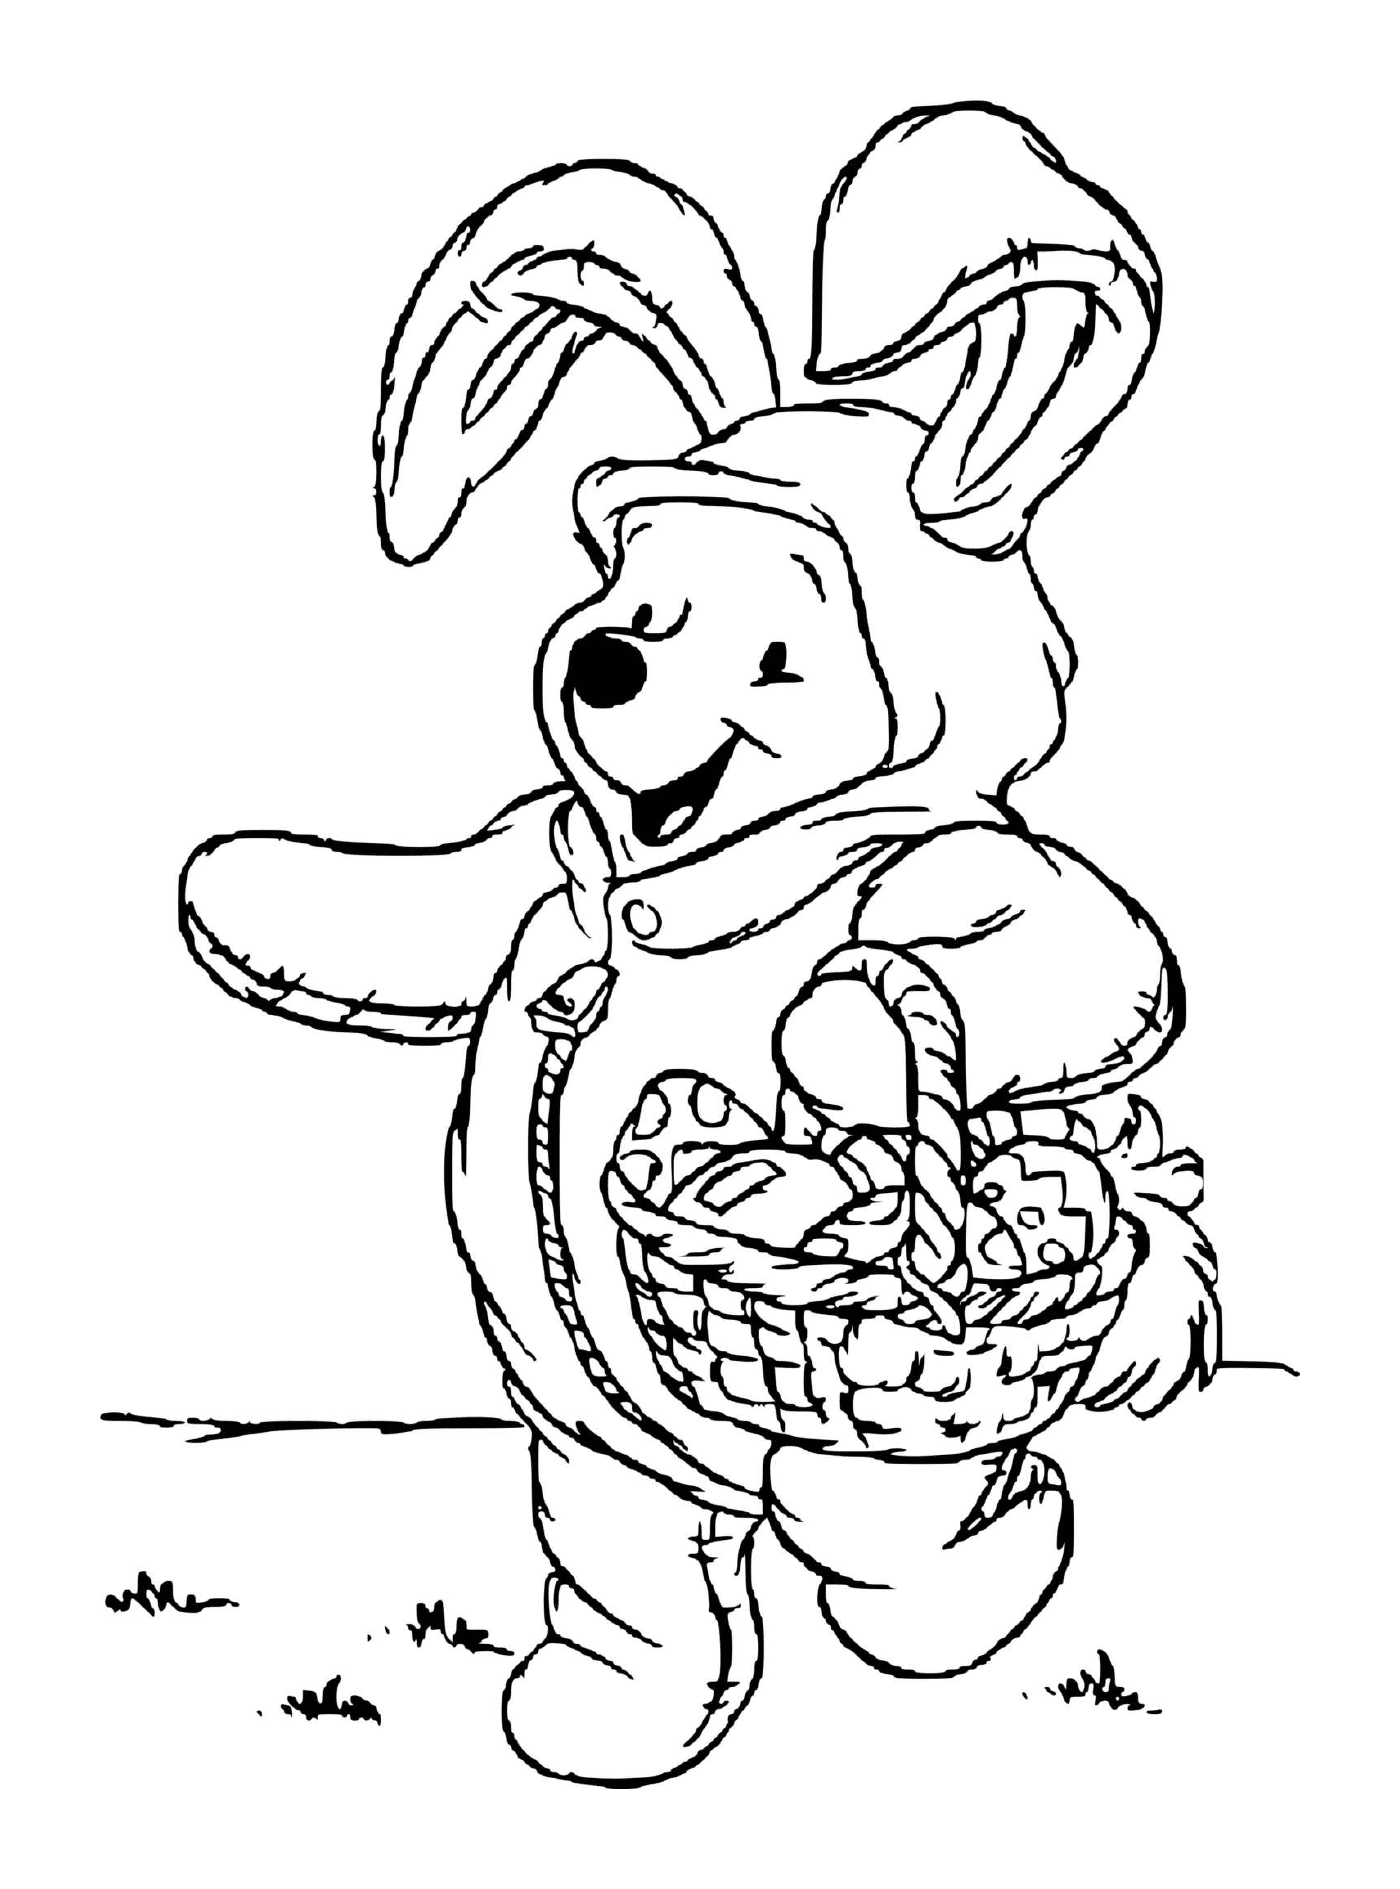  Winnie el oso disfrazado de conejo para Pascua 